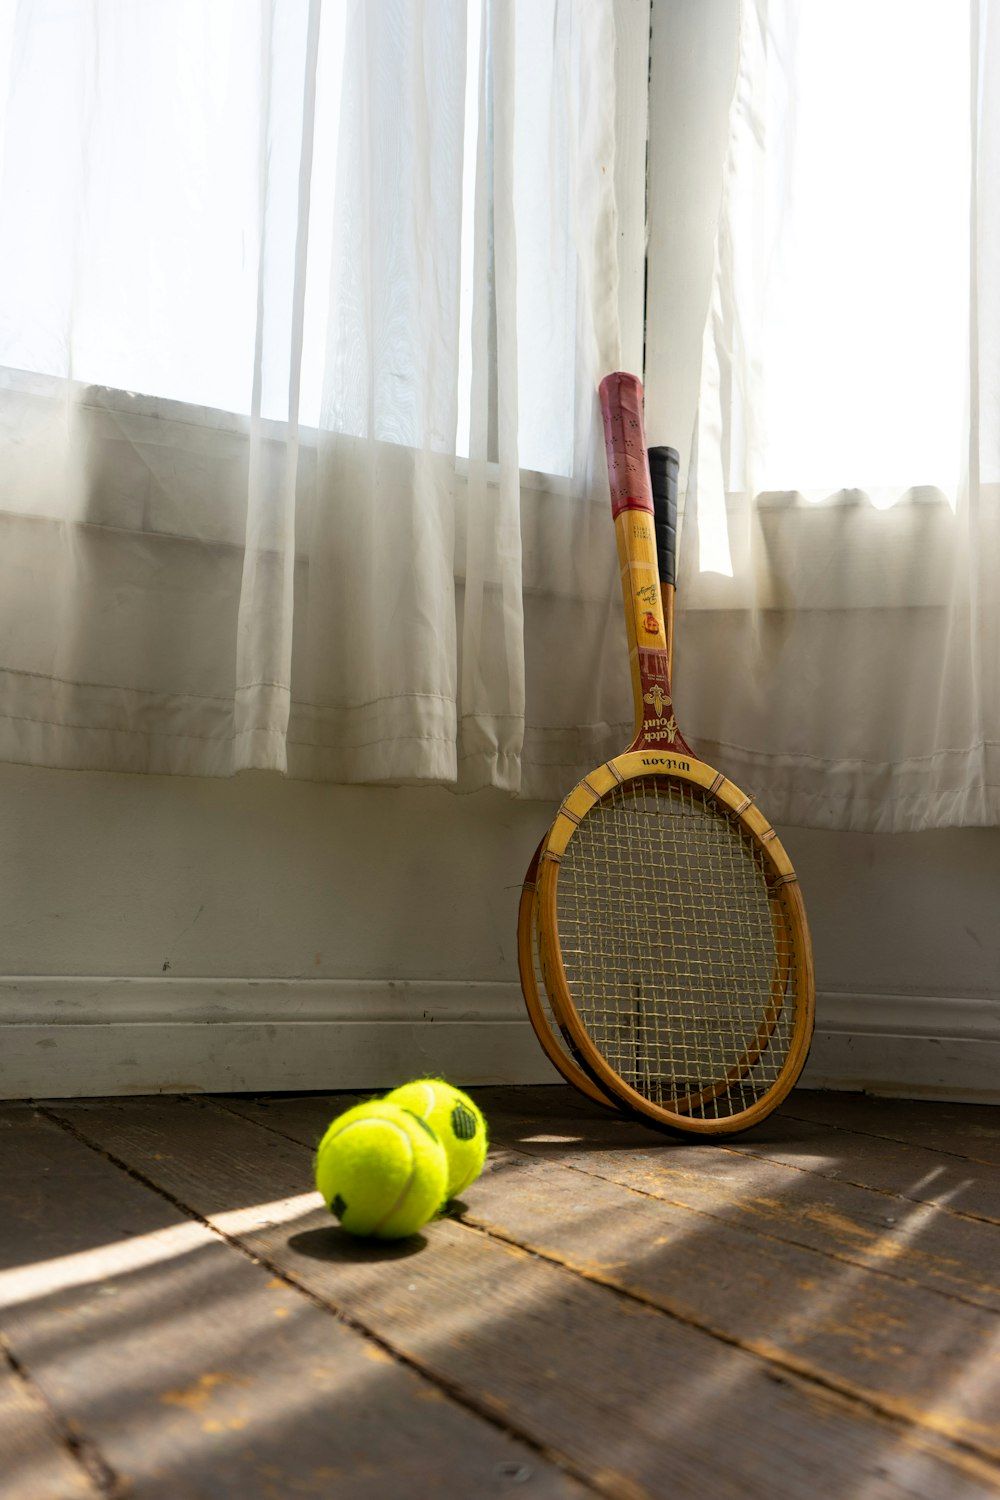 Raquette de tennis jaune et noire